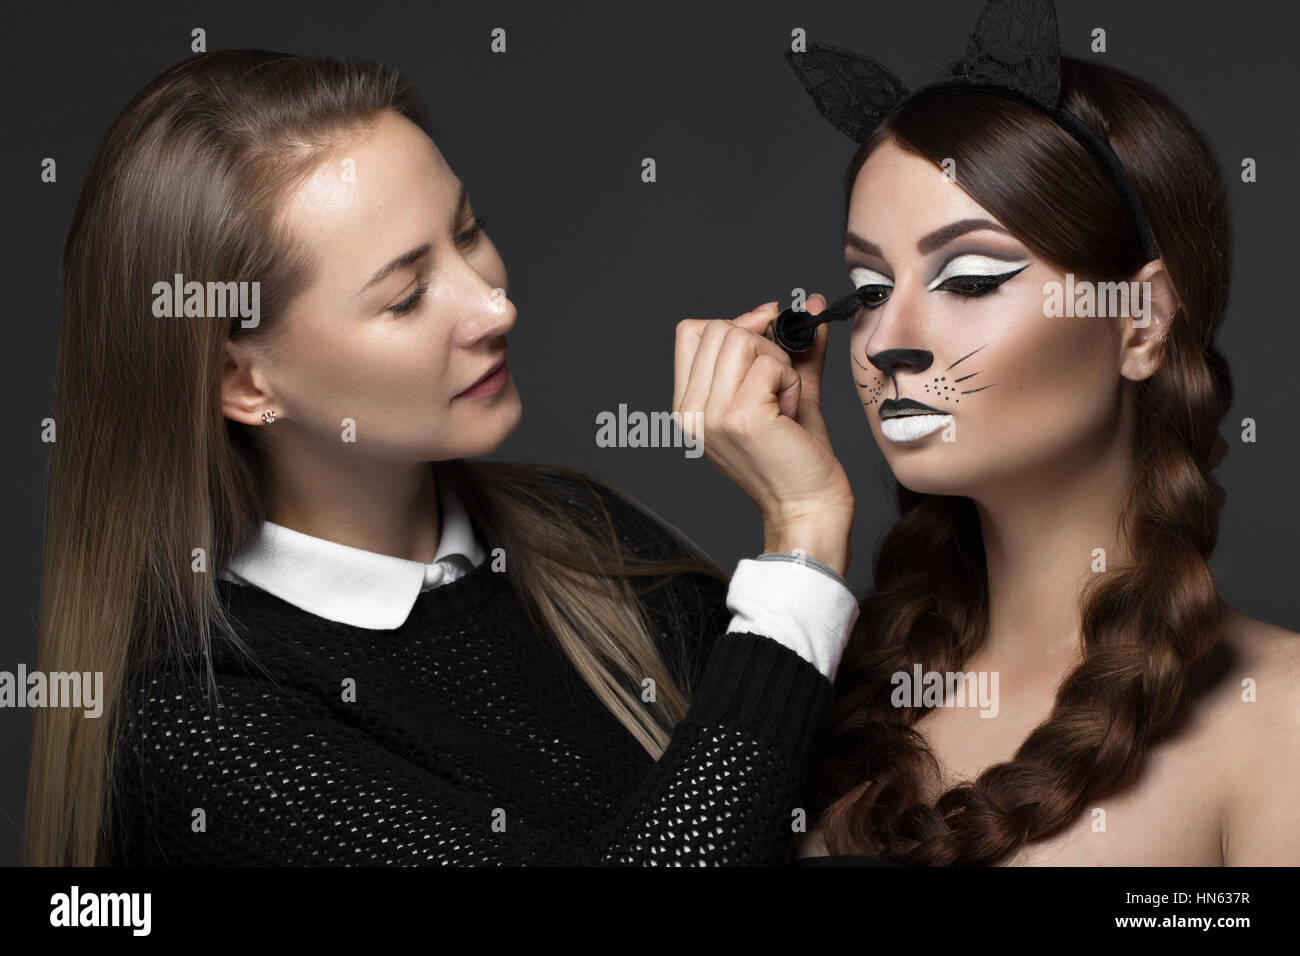 Zwei schöne Mädchen auf Foto schießen Gesicht Make-up auftragen. Schönheit Mode-Modell. Stockfoto